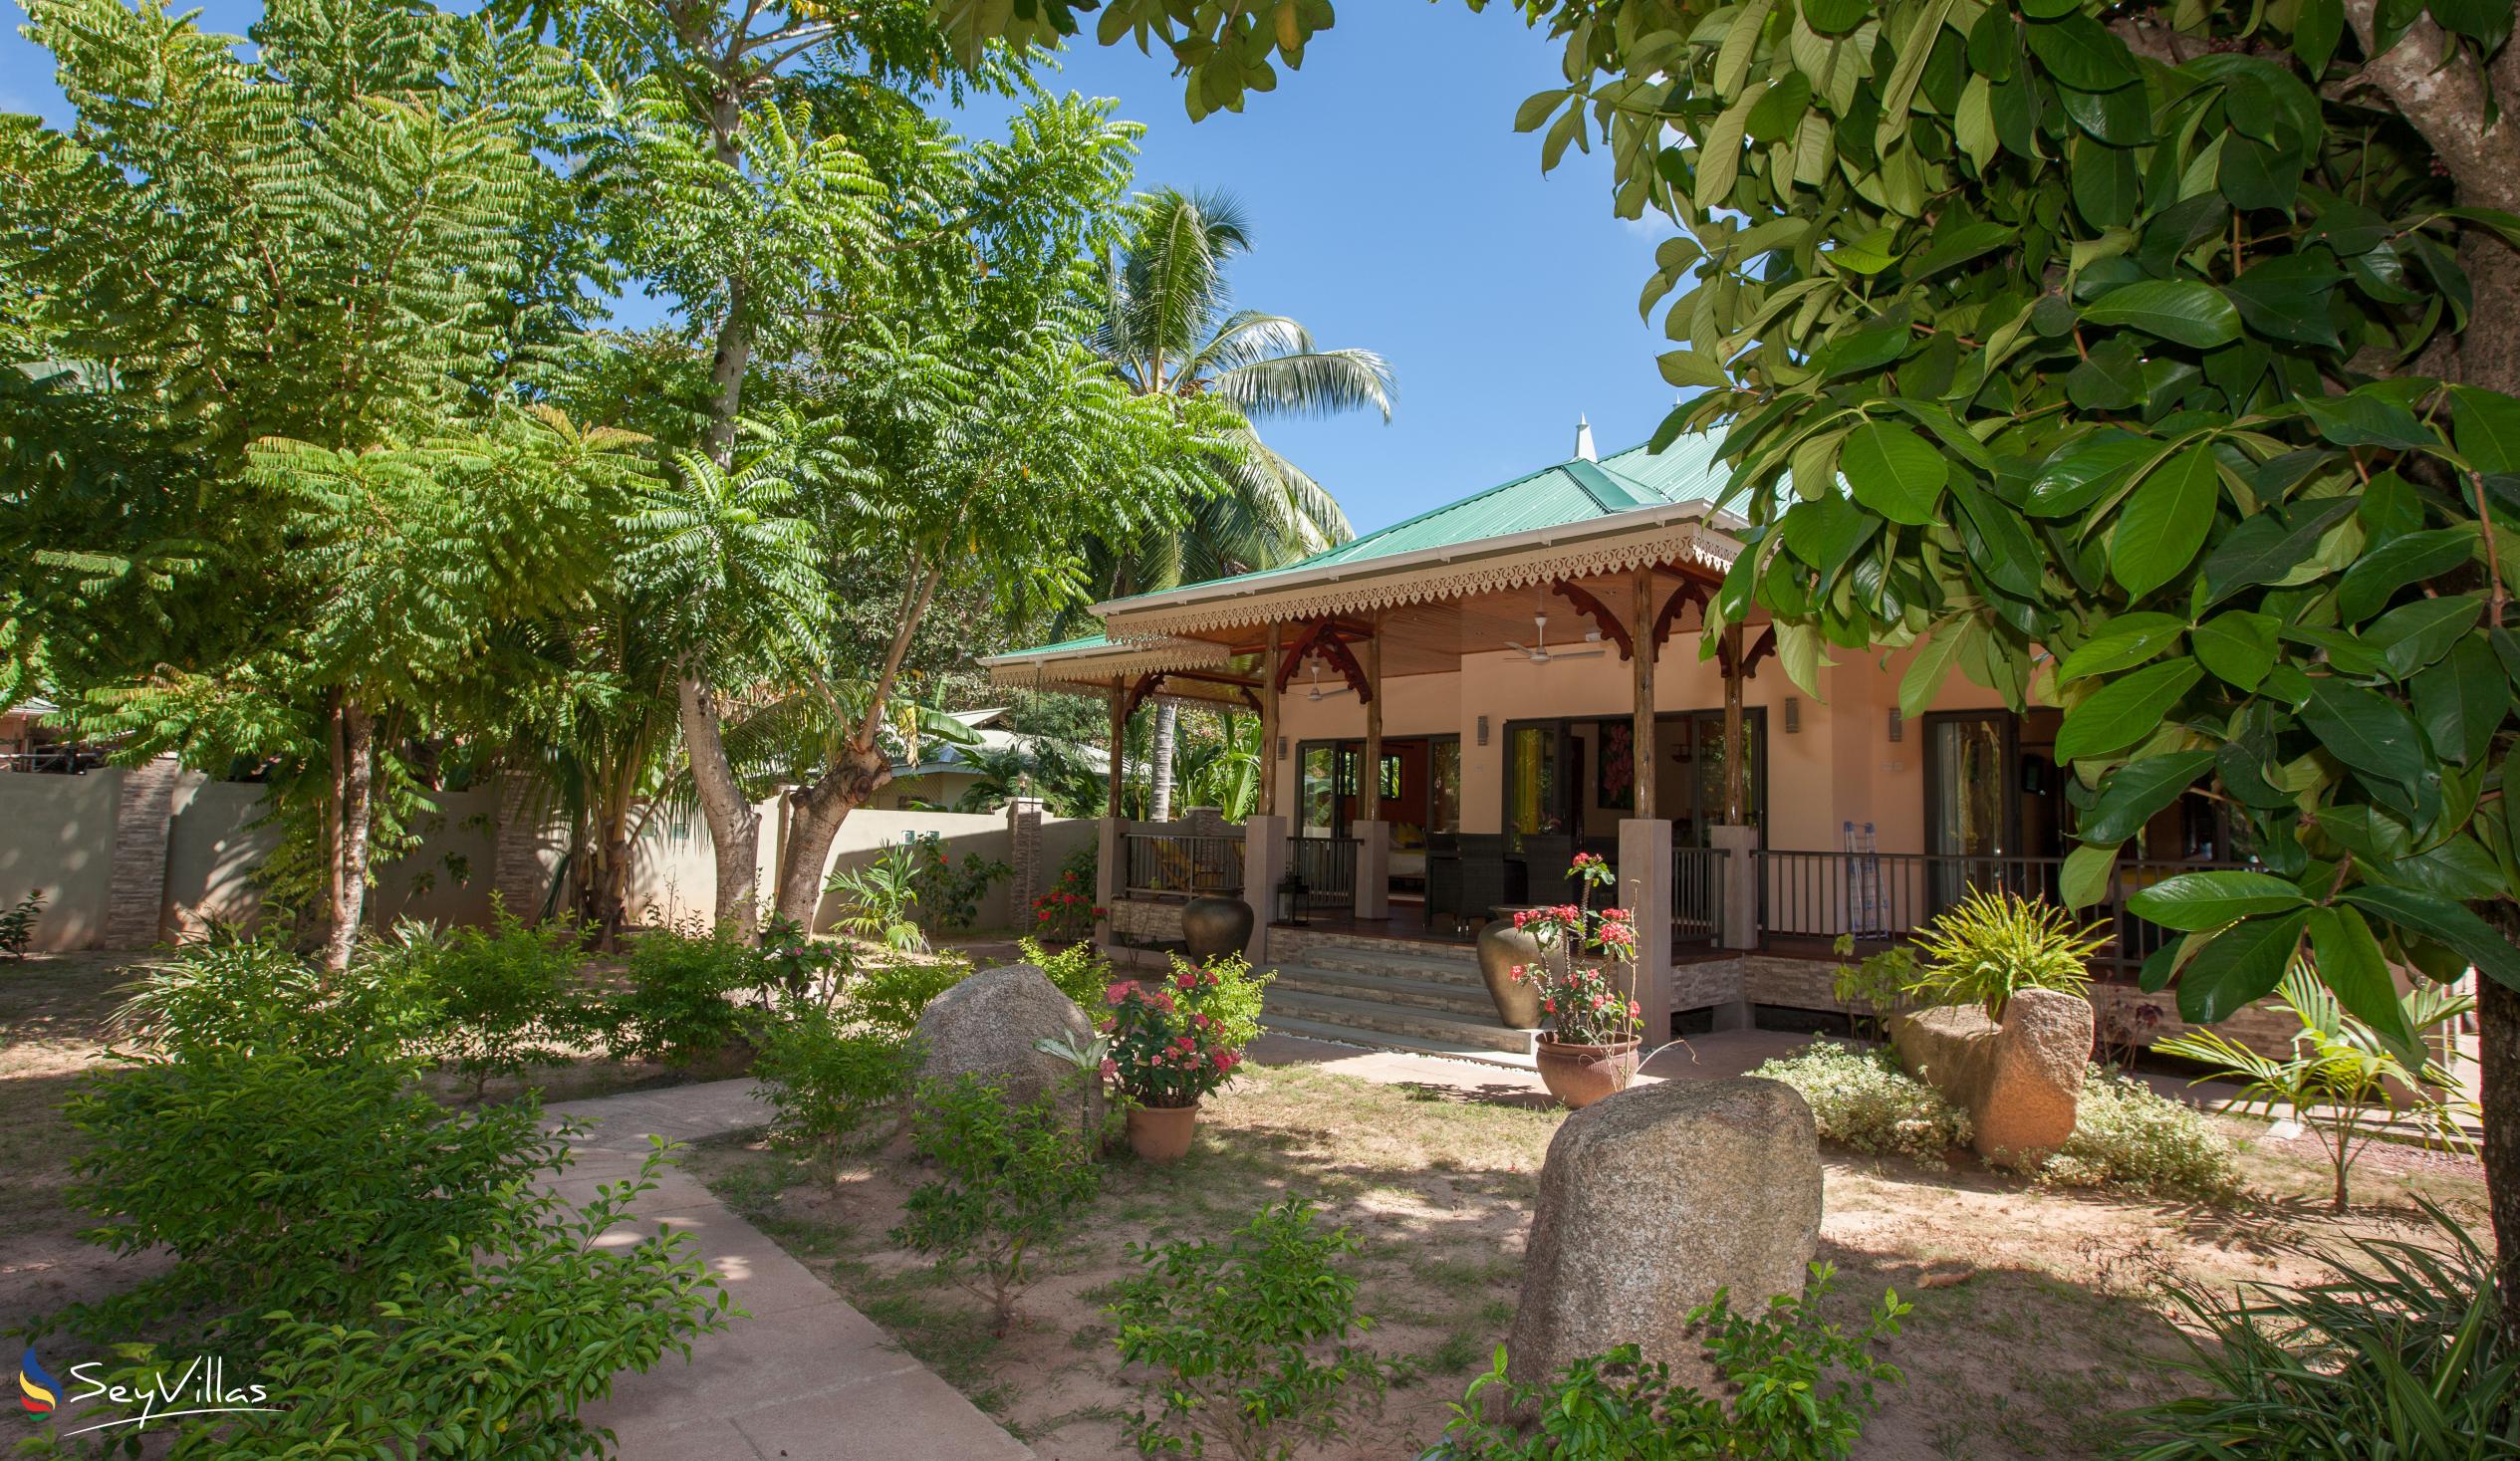 Foto 16: Casa de Leela - Extérieur - La Digue (Seychelles)